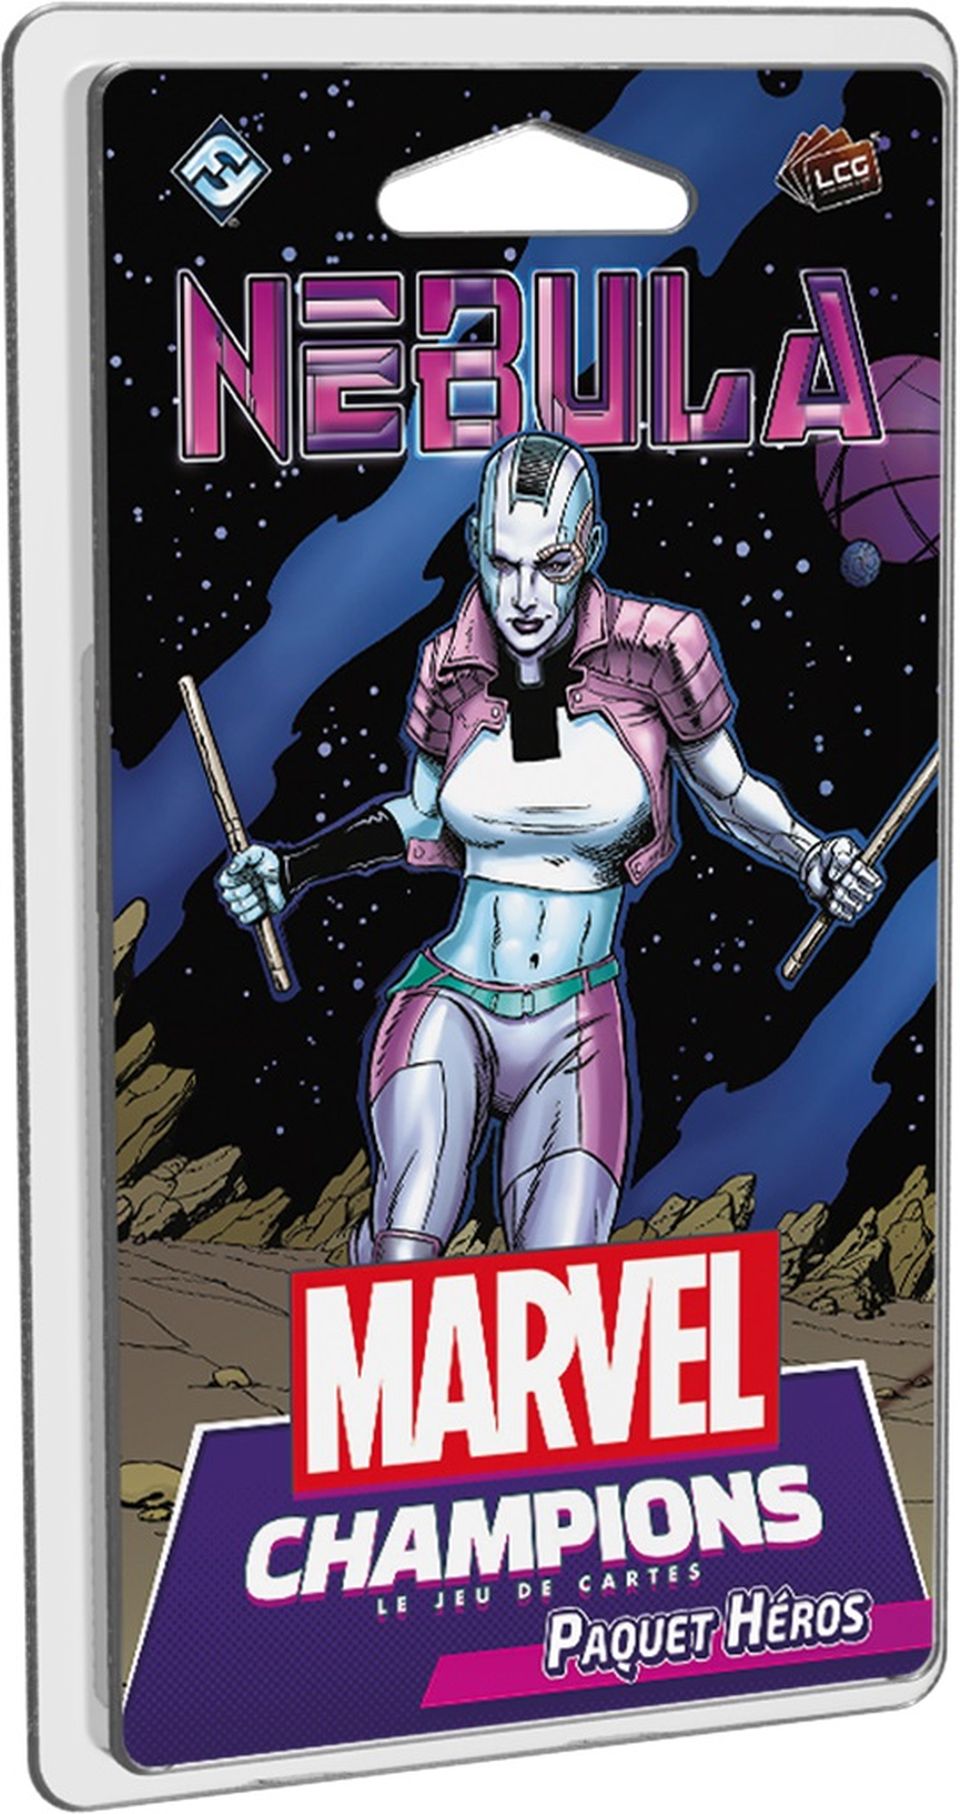 Marvel Champions : Le jeu de cartes - Nebula (Paquet Héros) image